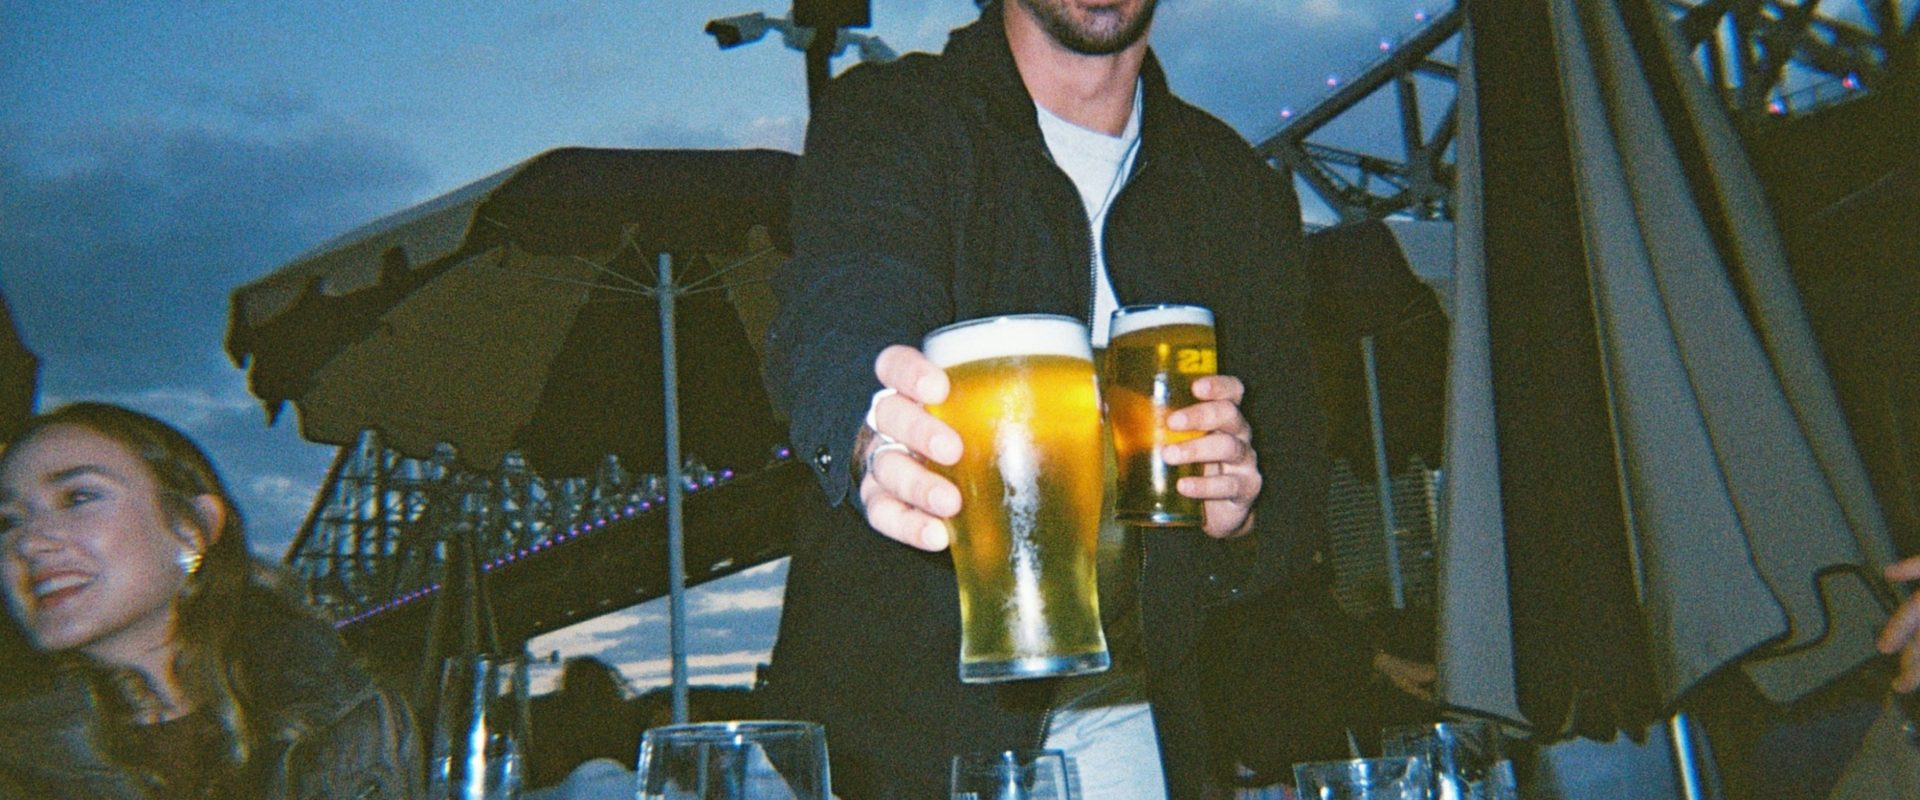 man sharing a beer